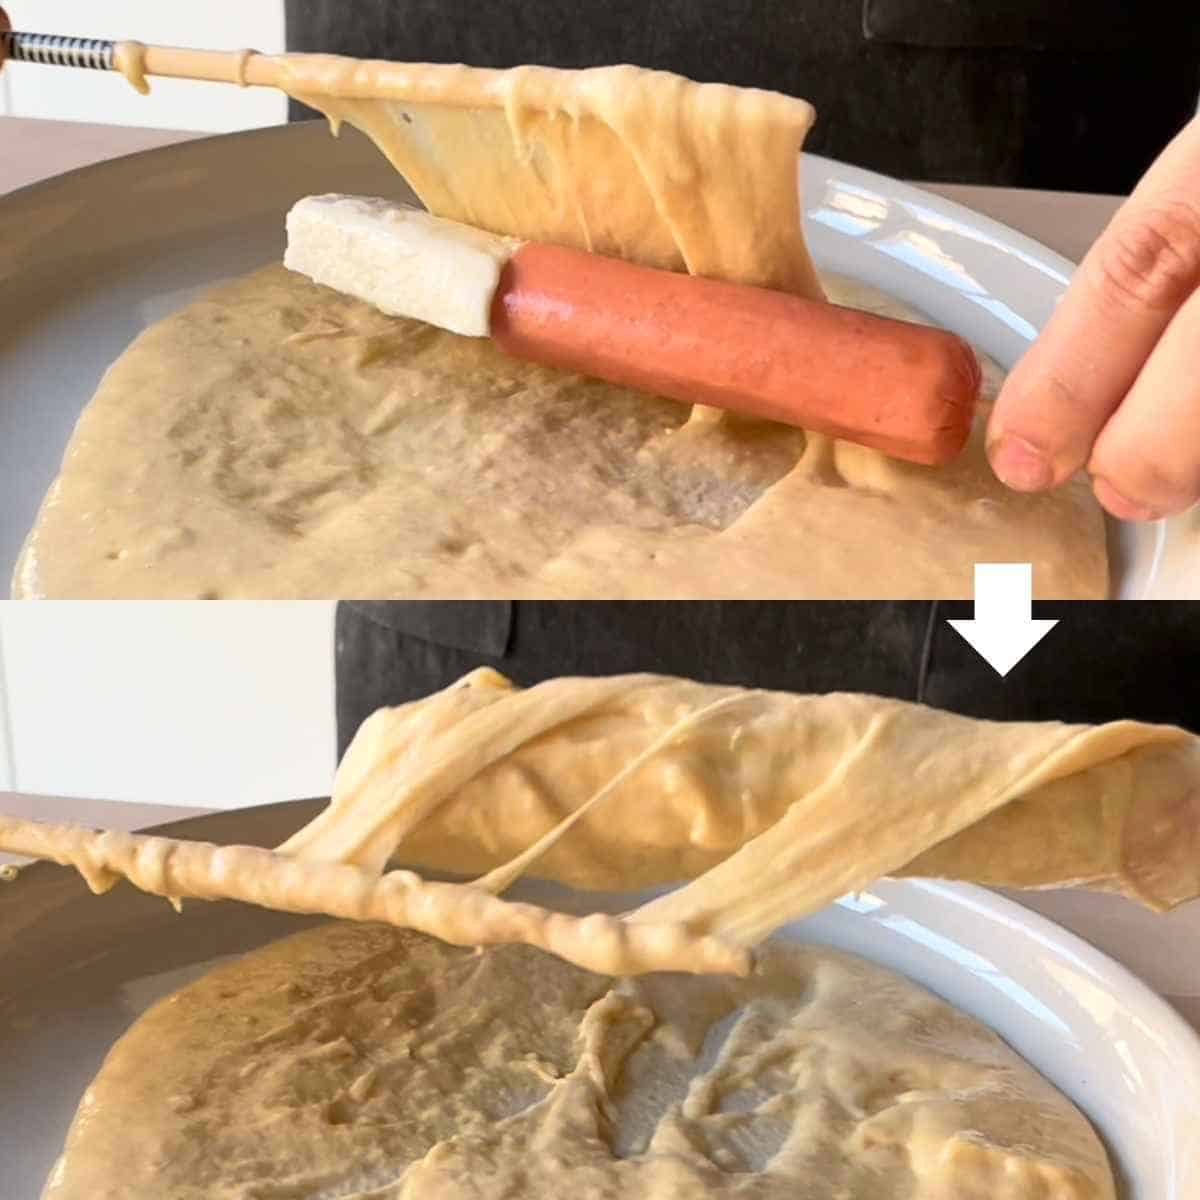 How to coat Korean corn dog in batter